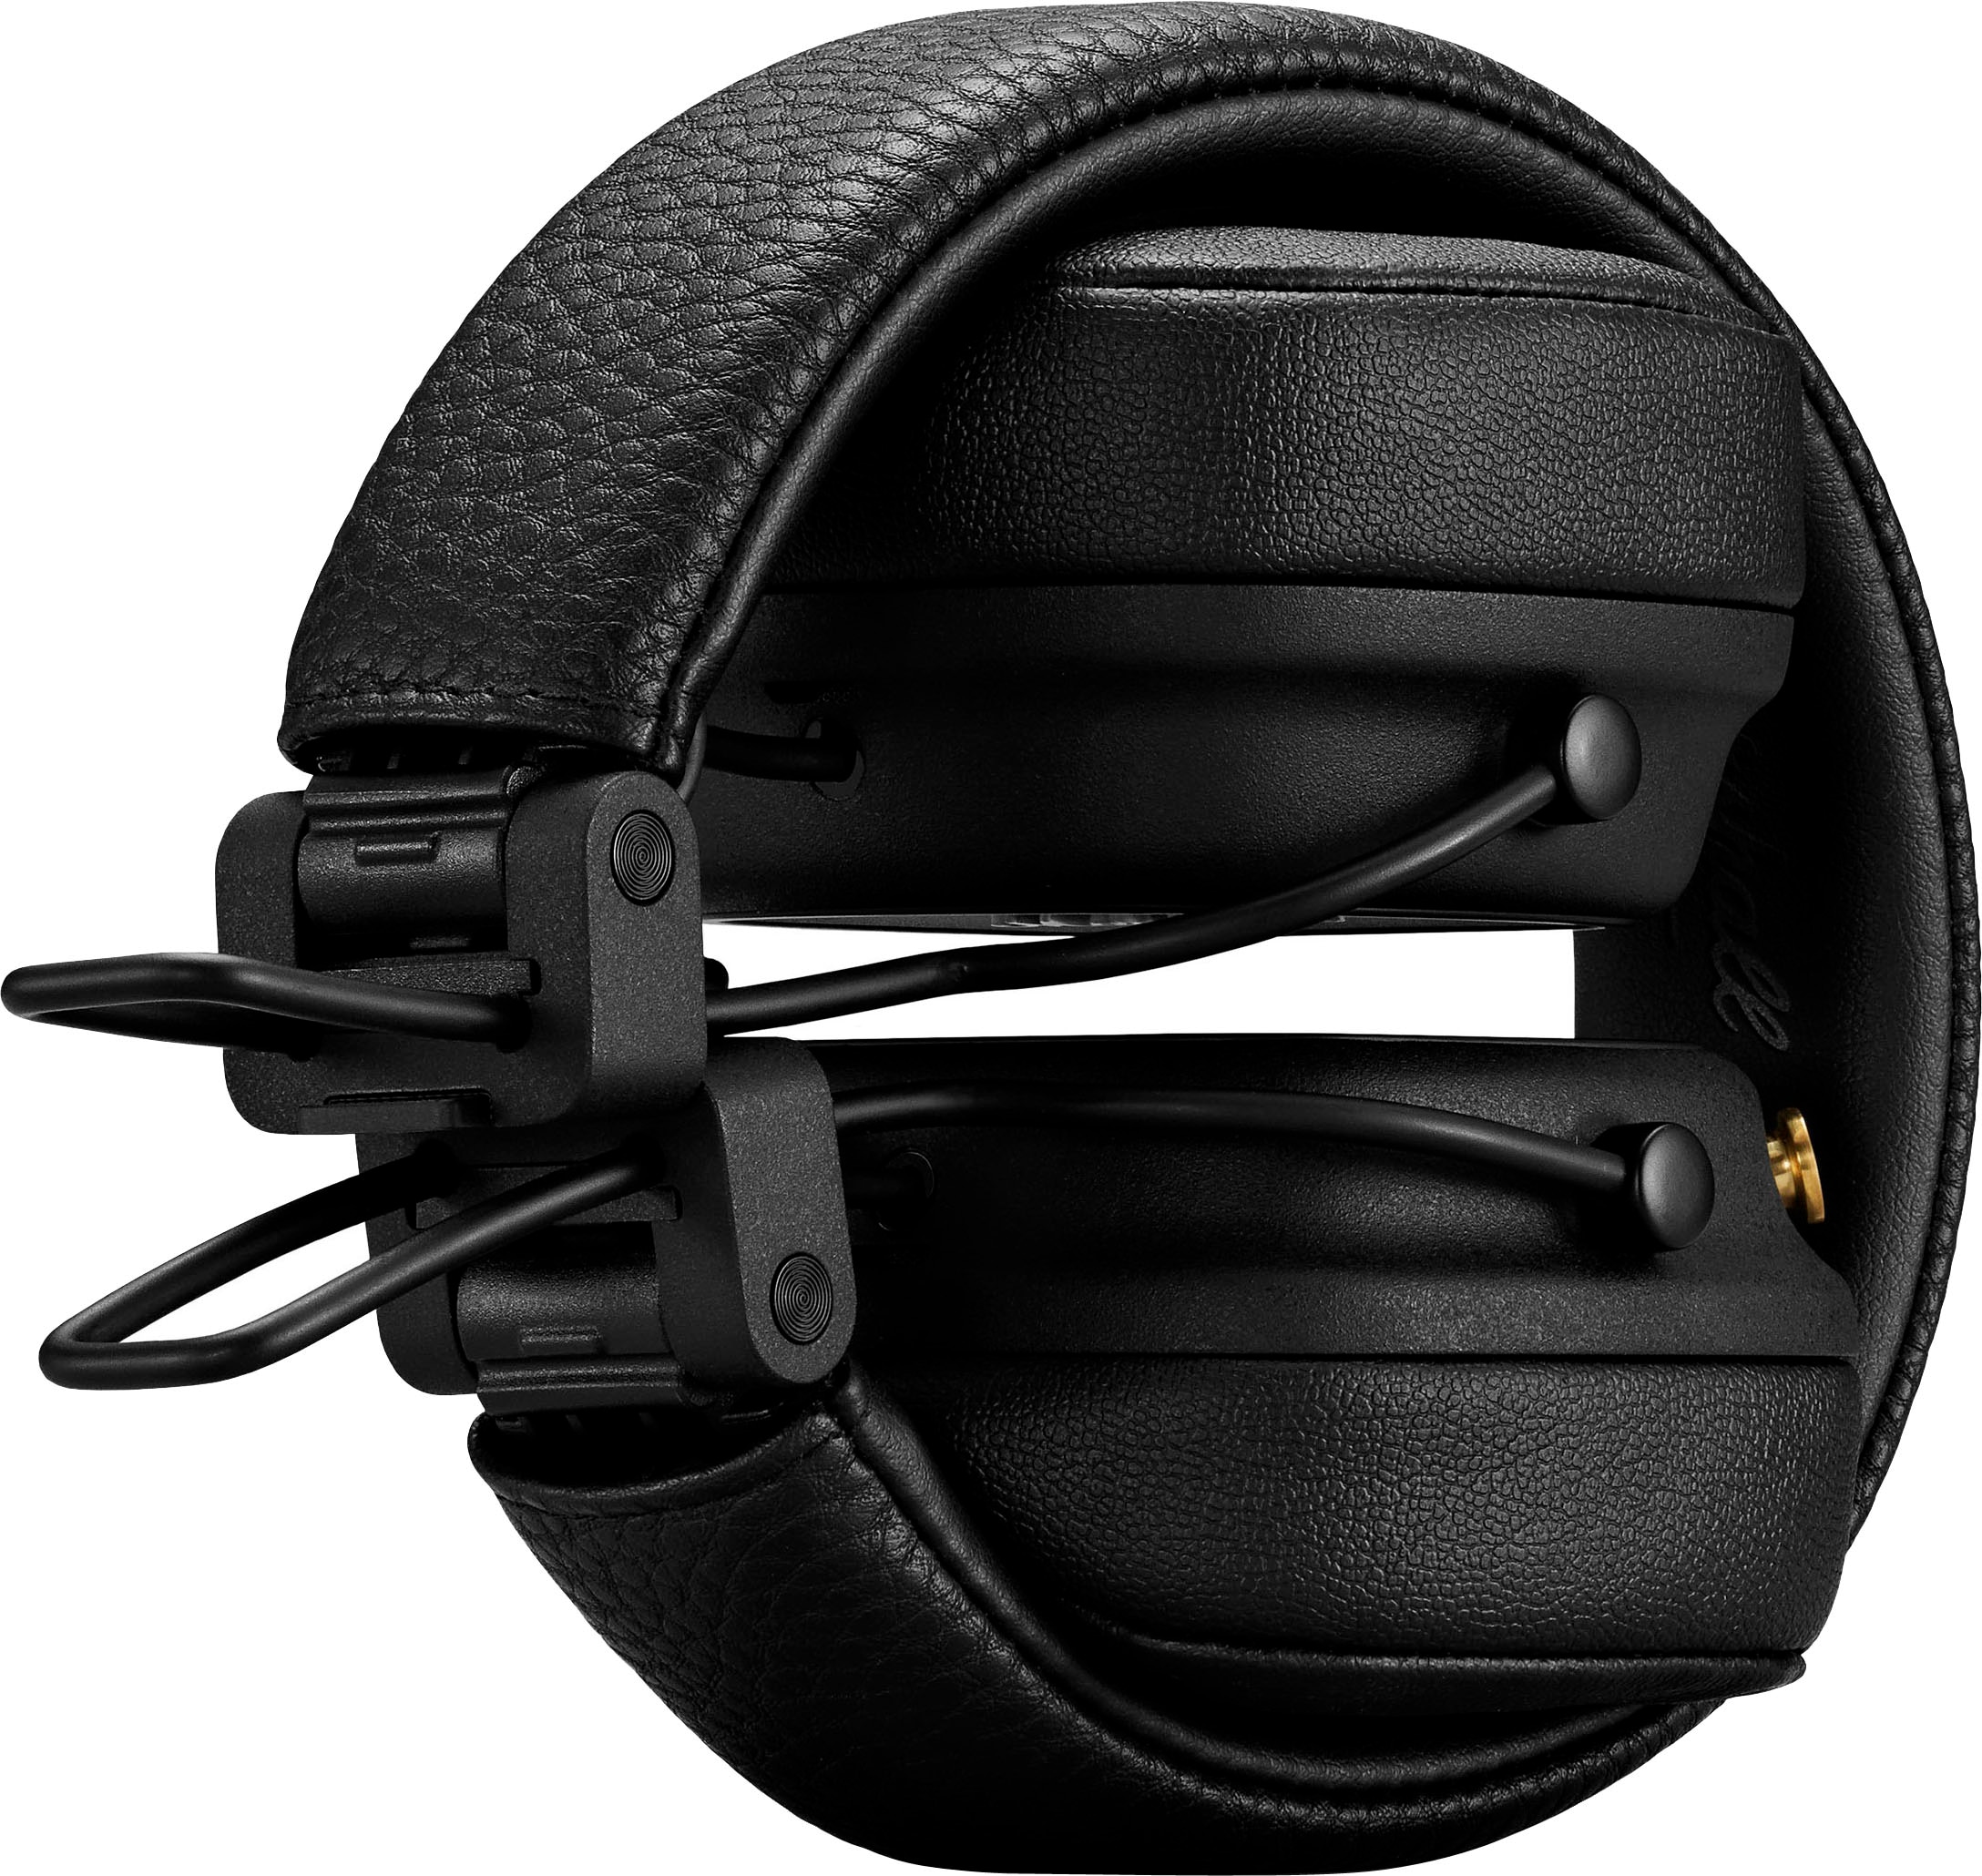 Marshall Bluetooth-Kopfhörer jetzt OTTO kaufen integrierte Steuerung Bluetooth, »Major IV«, bei Musik für Anrufe und